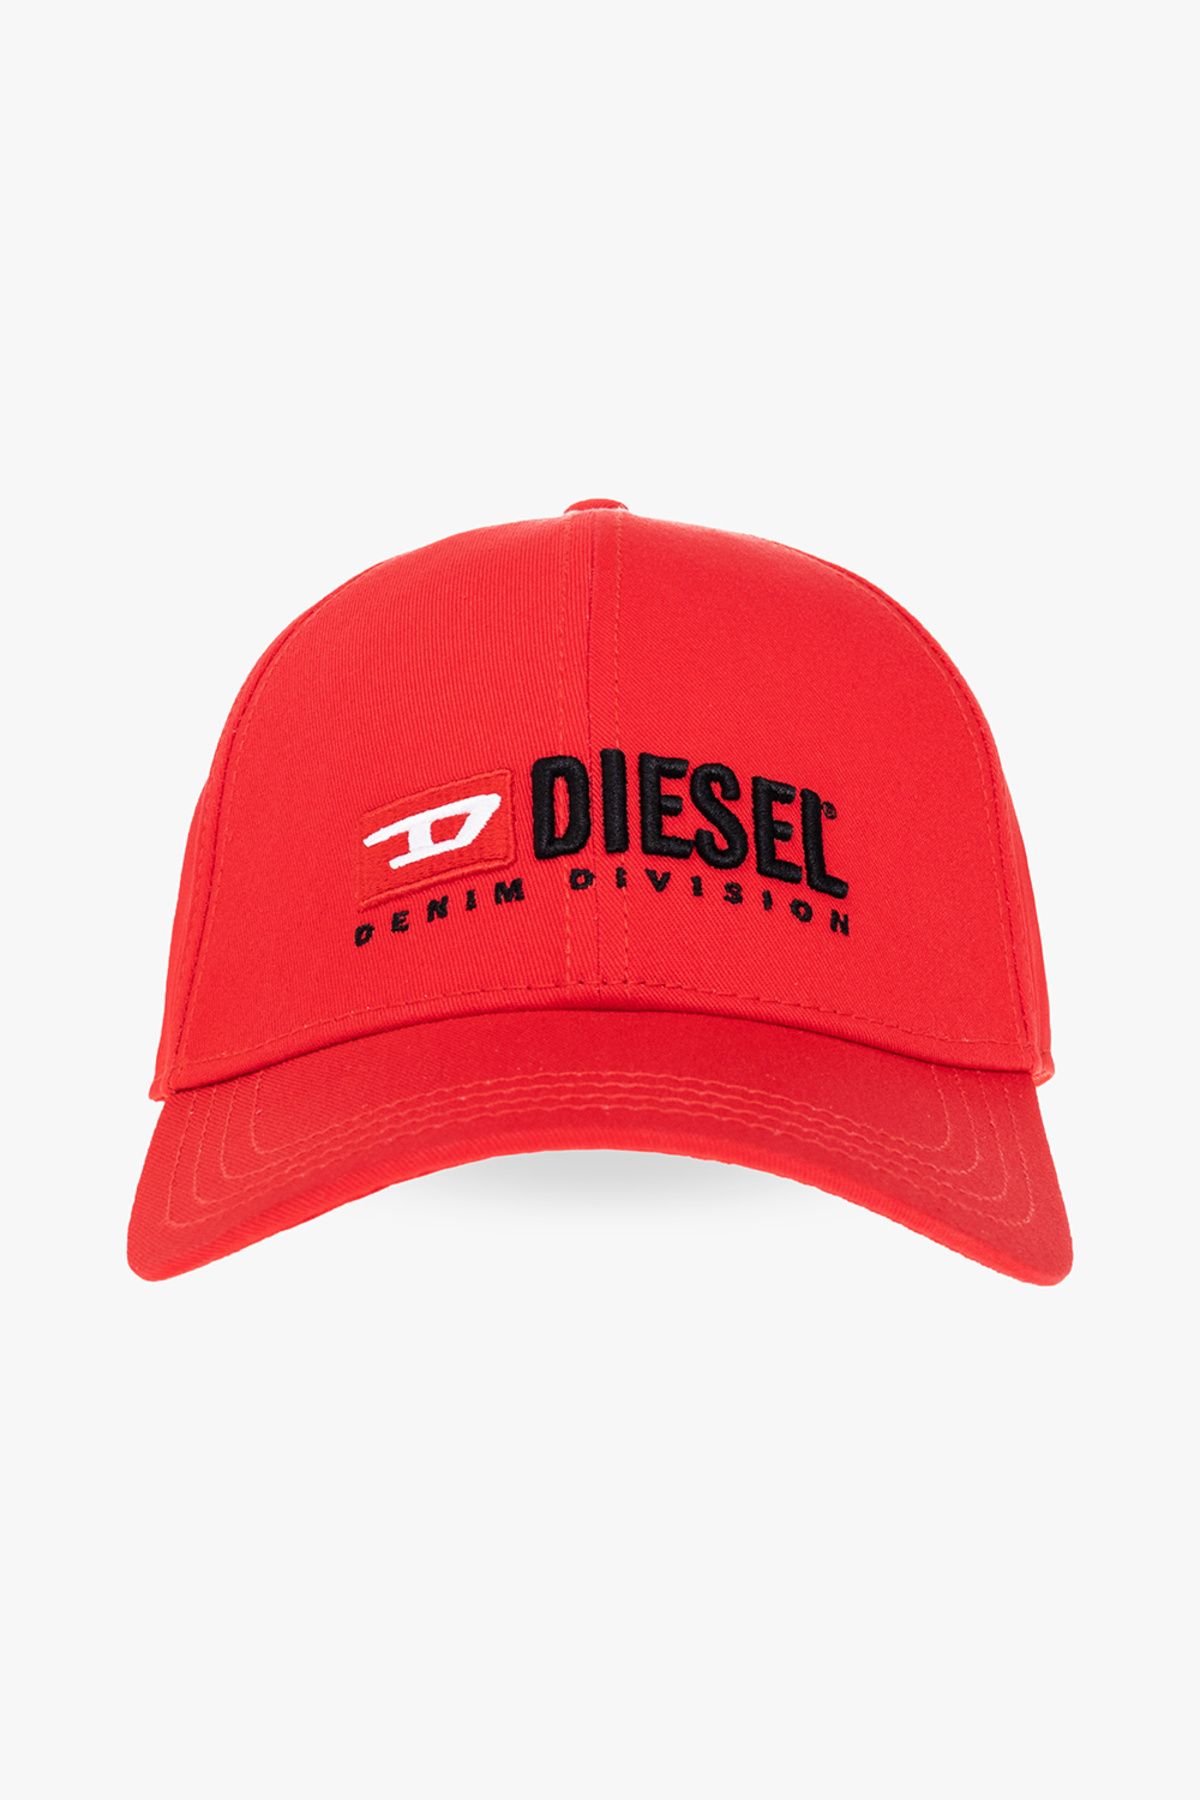 Diesel Dıesel Unısex Şapka A03699-0jcar-42a